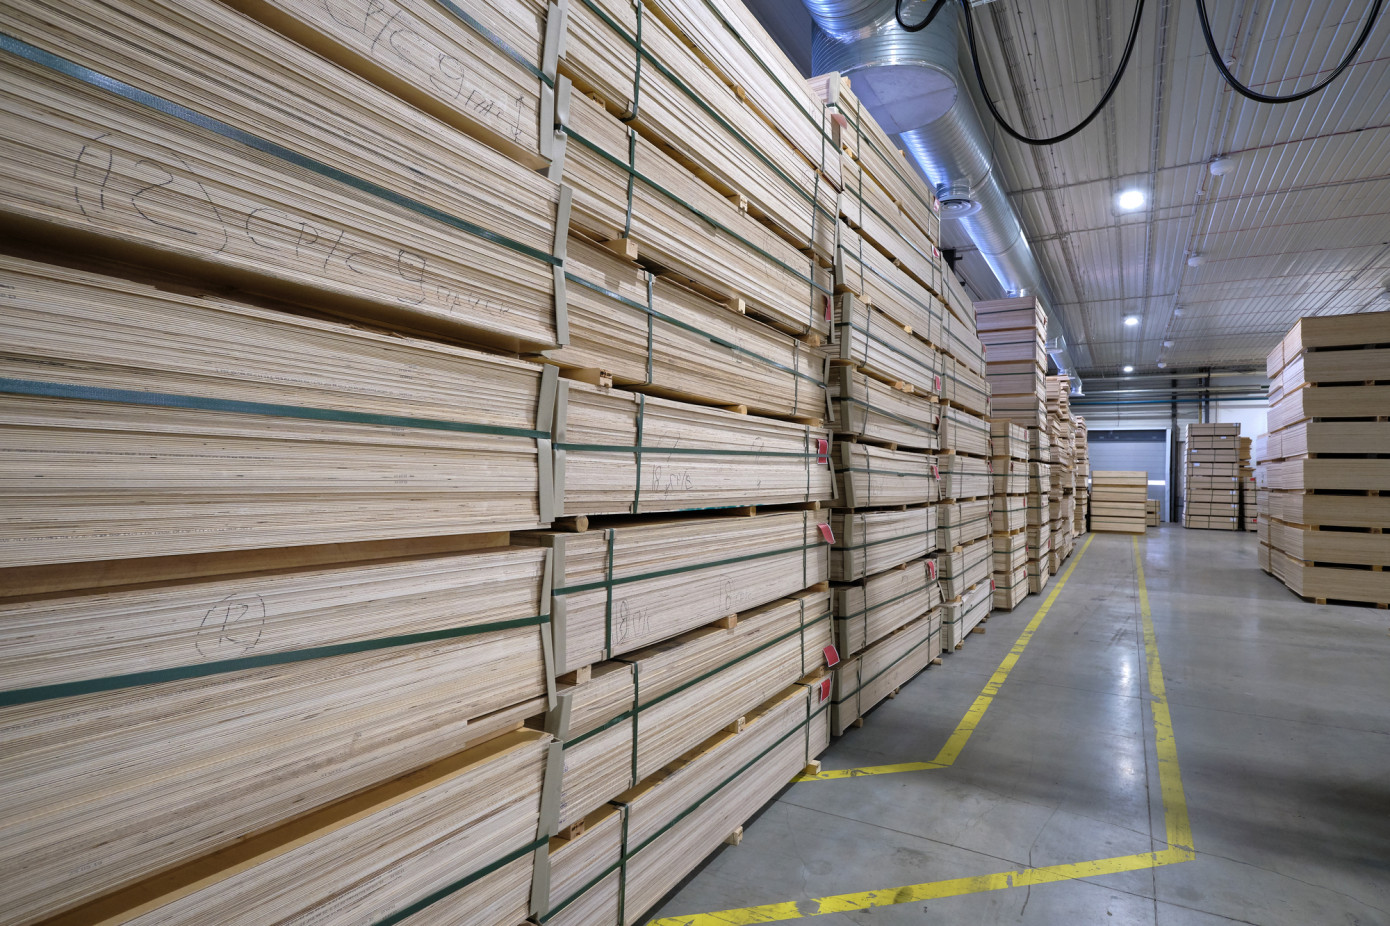 Imports of wood veneer to Japan decline 89% in September